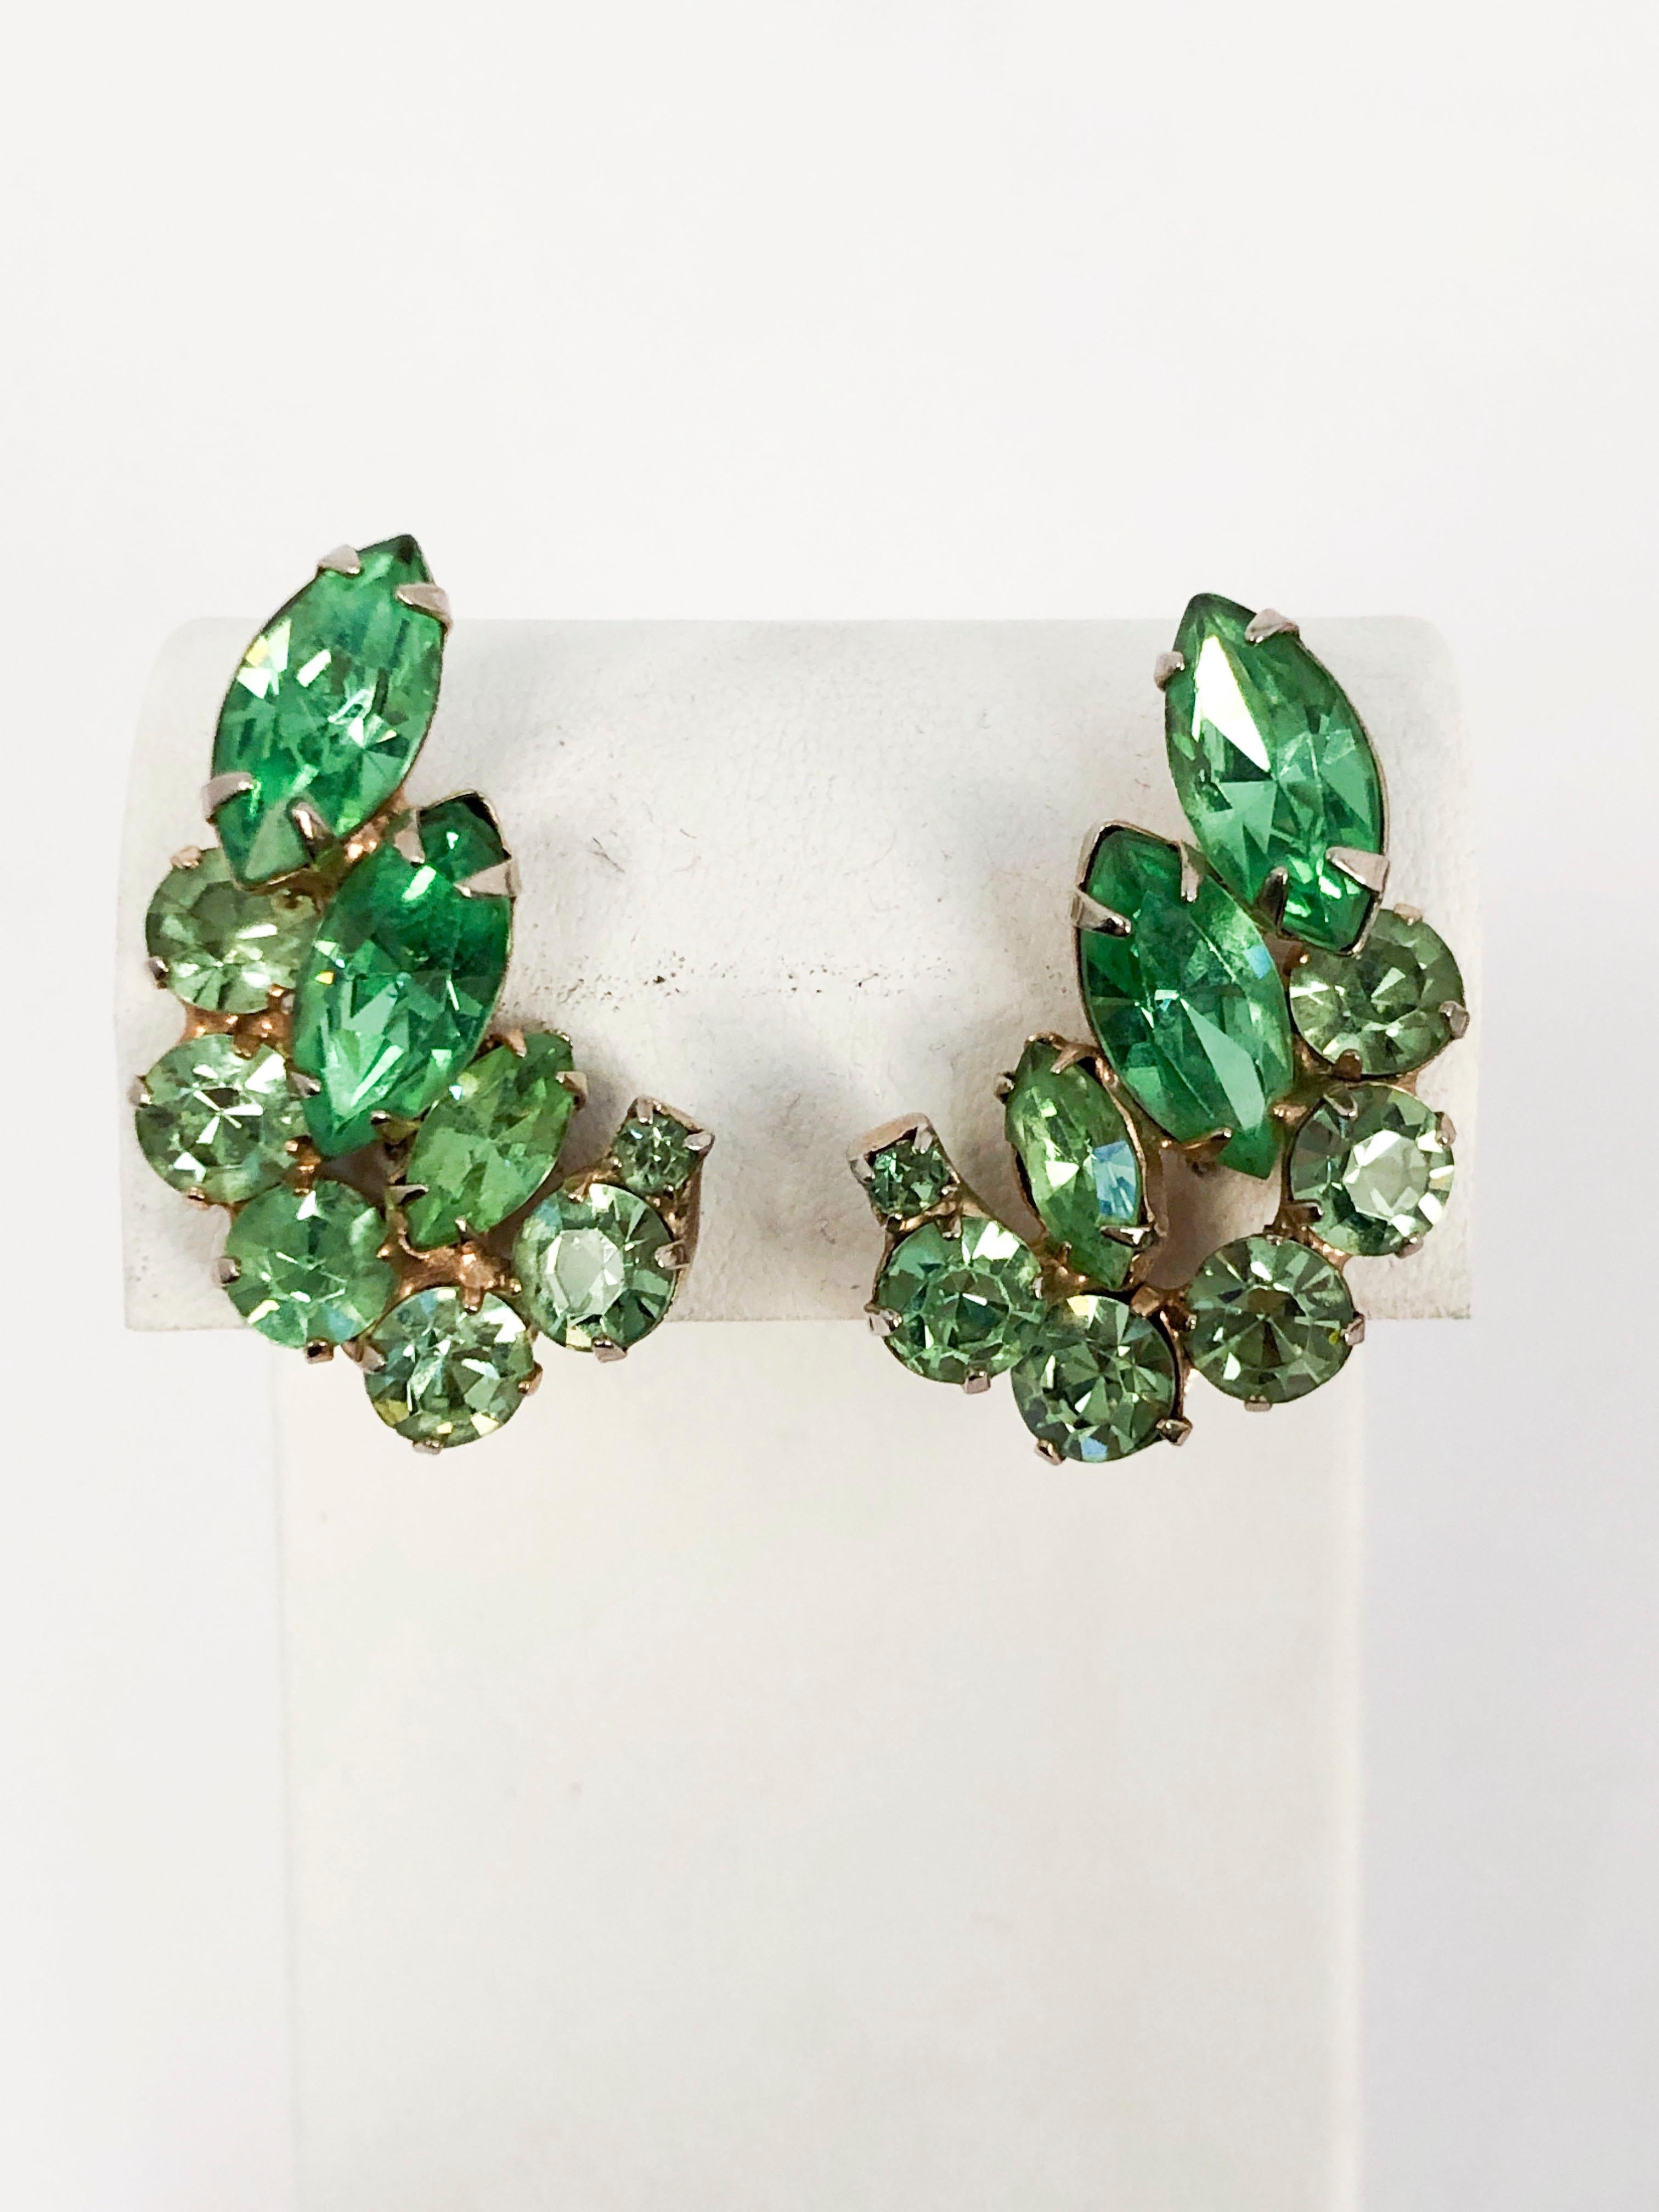 1950s Hattie Carnegie Clip-on Earrings in Multi-shades of Green on gold base metal.